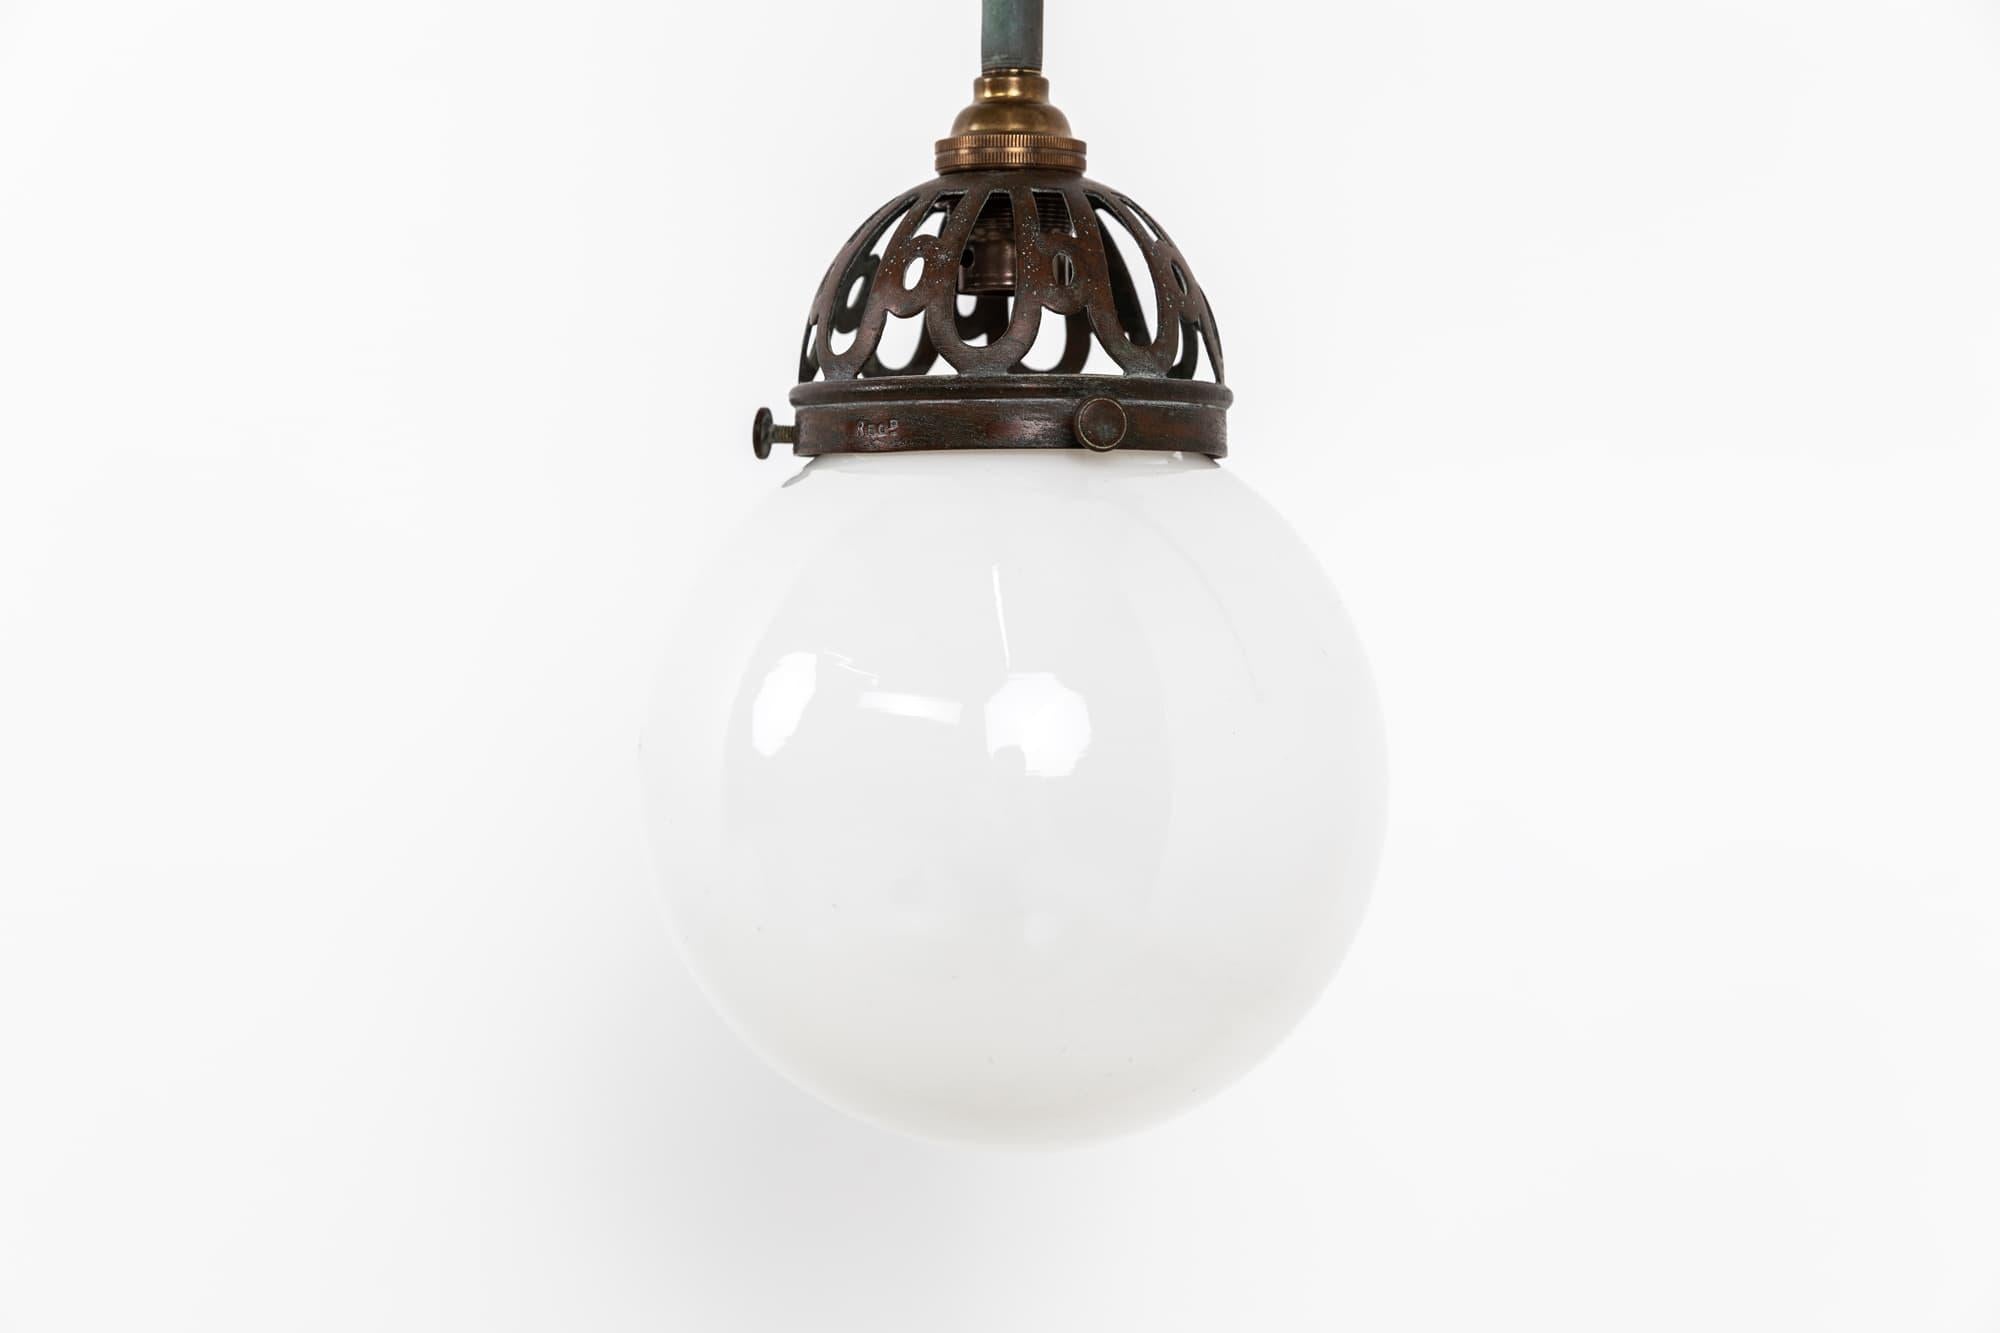 

Elegante ehemalige Gas-Wandlampe mit Opalin-Schirm. Um 1920

Messingkonstruktion mit durchbrochener GEC-Galerie und kleinem kugelförmigen Opalglasschirm. 

Diese Lampe kann je nach Wunsch mit einem Stecker oder direkt mit dem Stromnetz verbunden